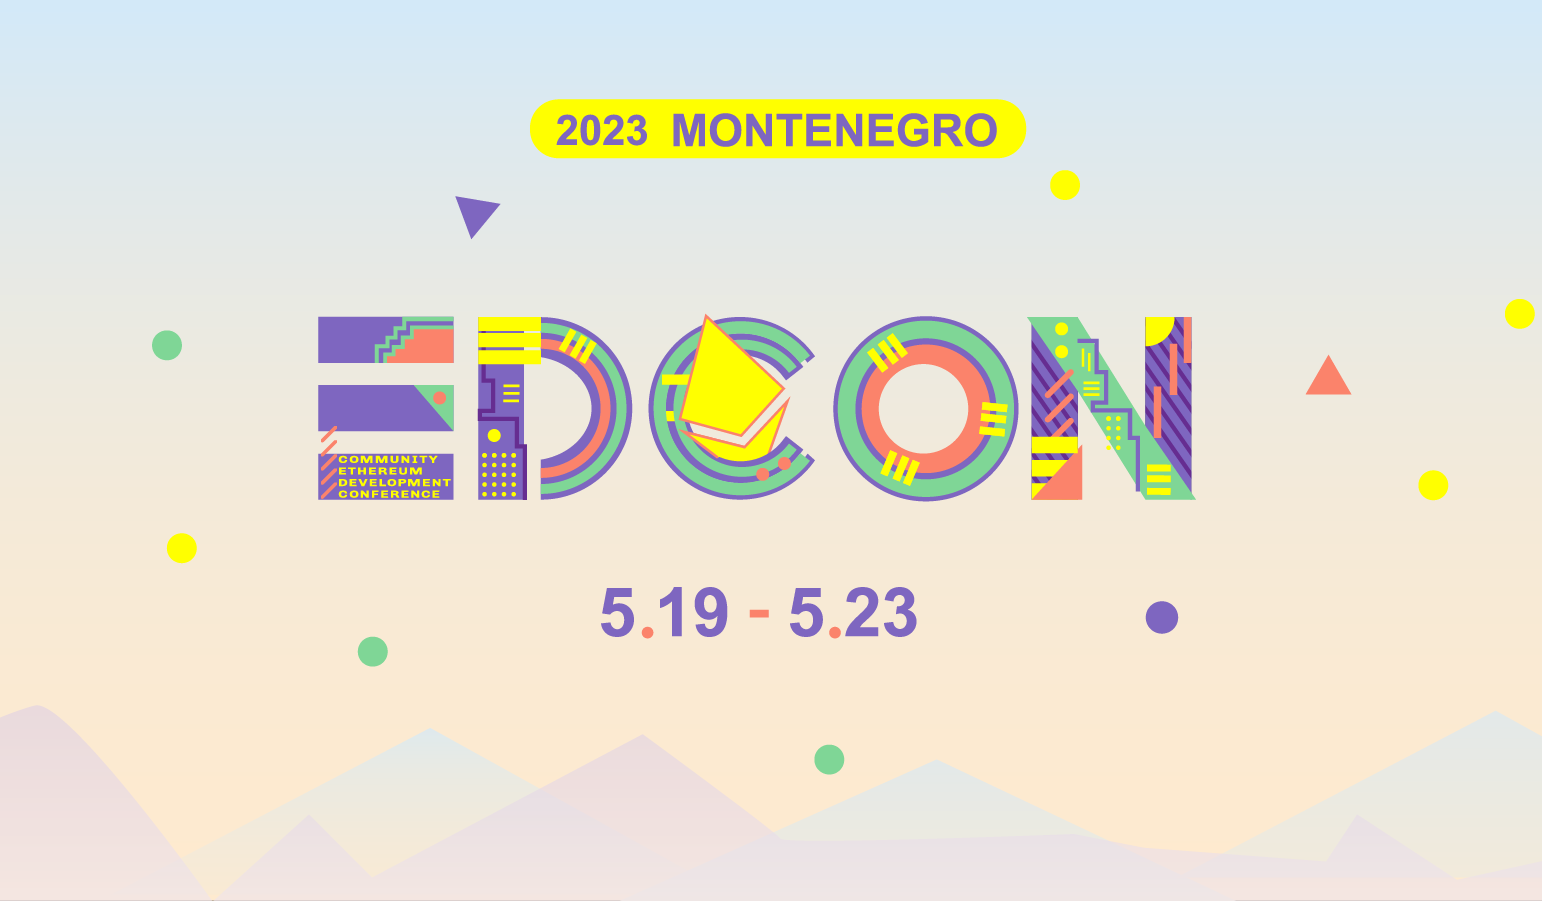 EDCON 2023